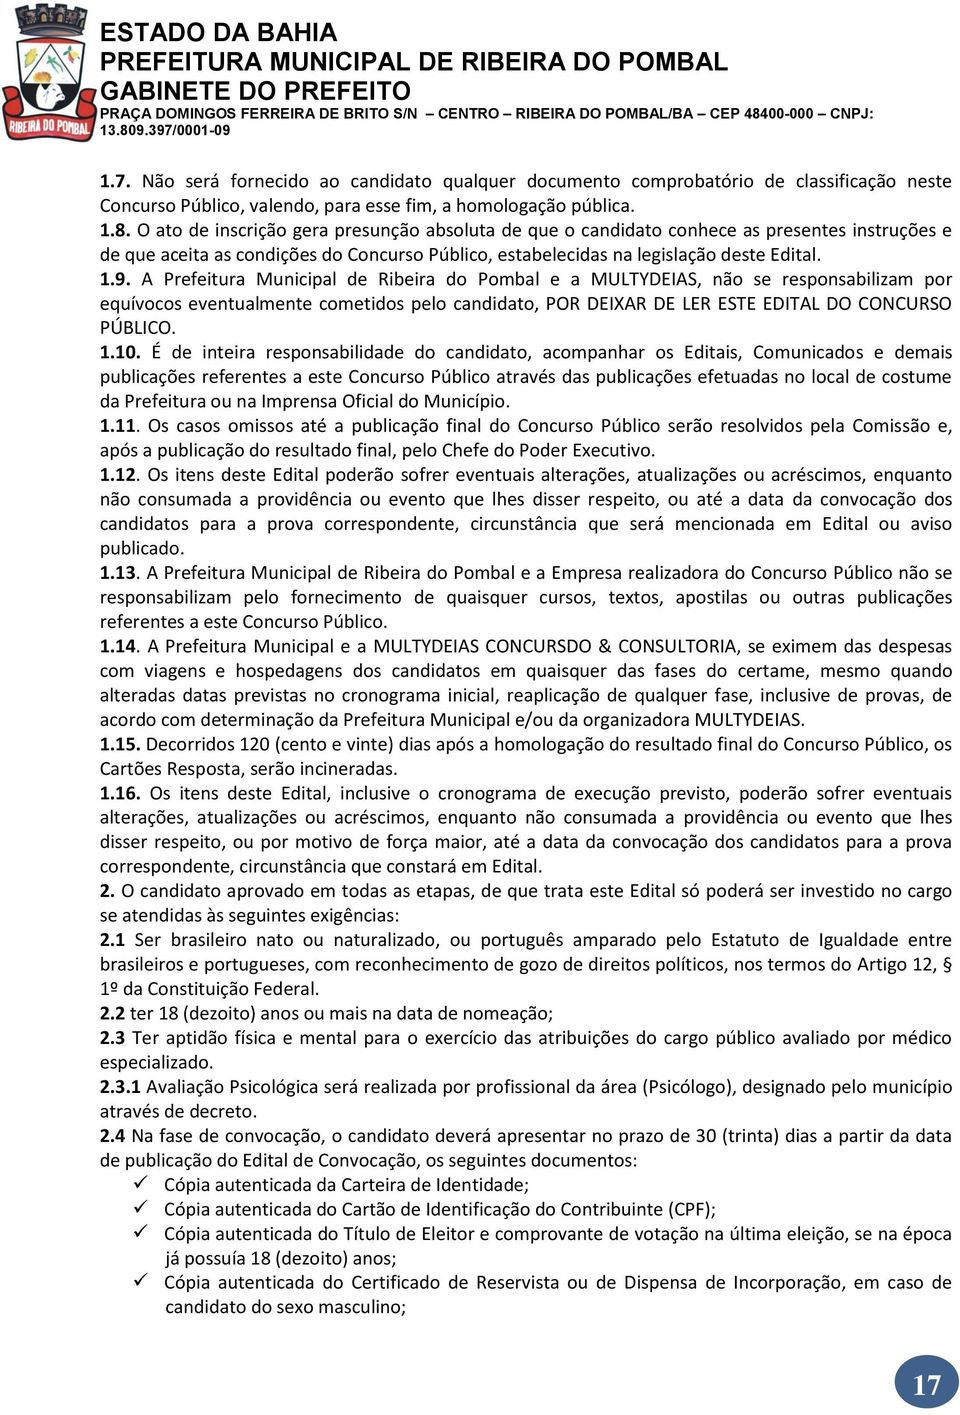 A Prefeitura Municipal de Ribeira do Pombal e a MULTYDEIAS, não se responsabilizam por equívocos eventualmente cometidos pelo candidato, POR DEIXAR DE LER ESTE EDITAL DO CONCURSO PÚBLICO. 1.10.